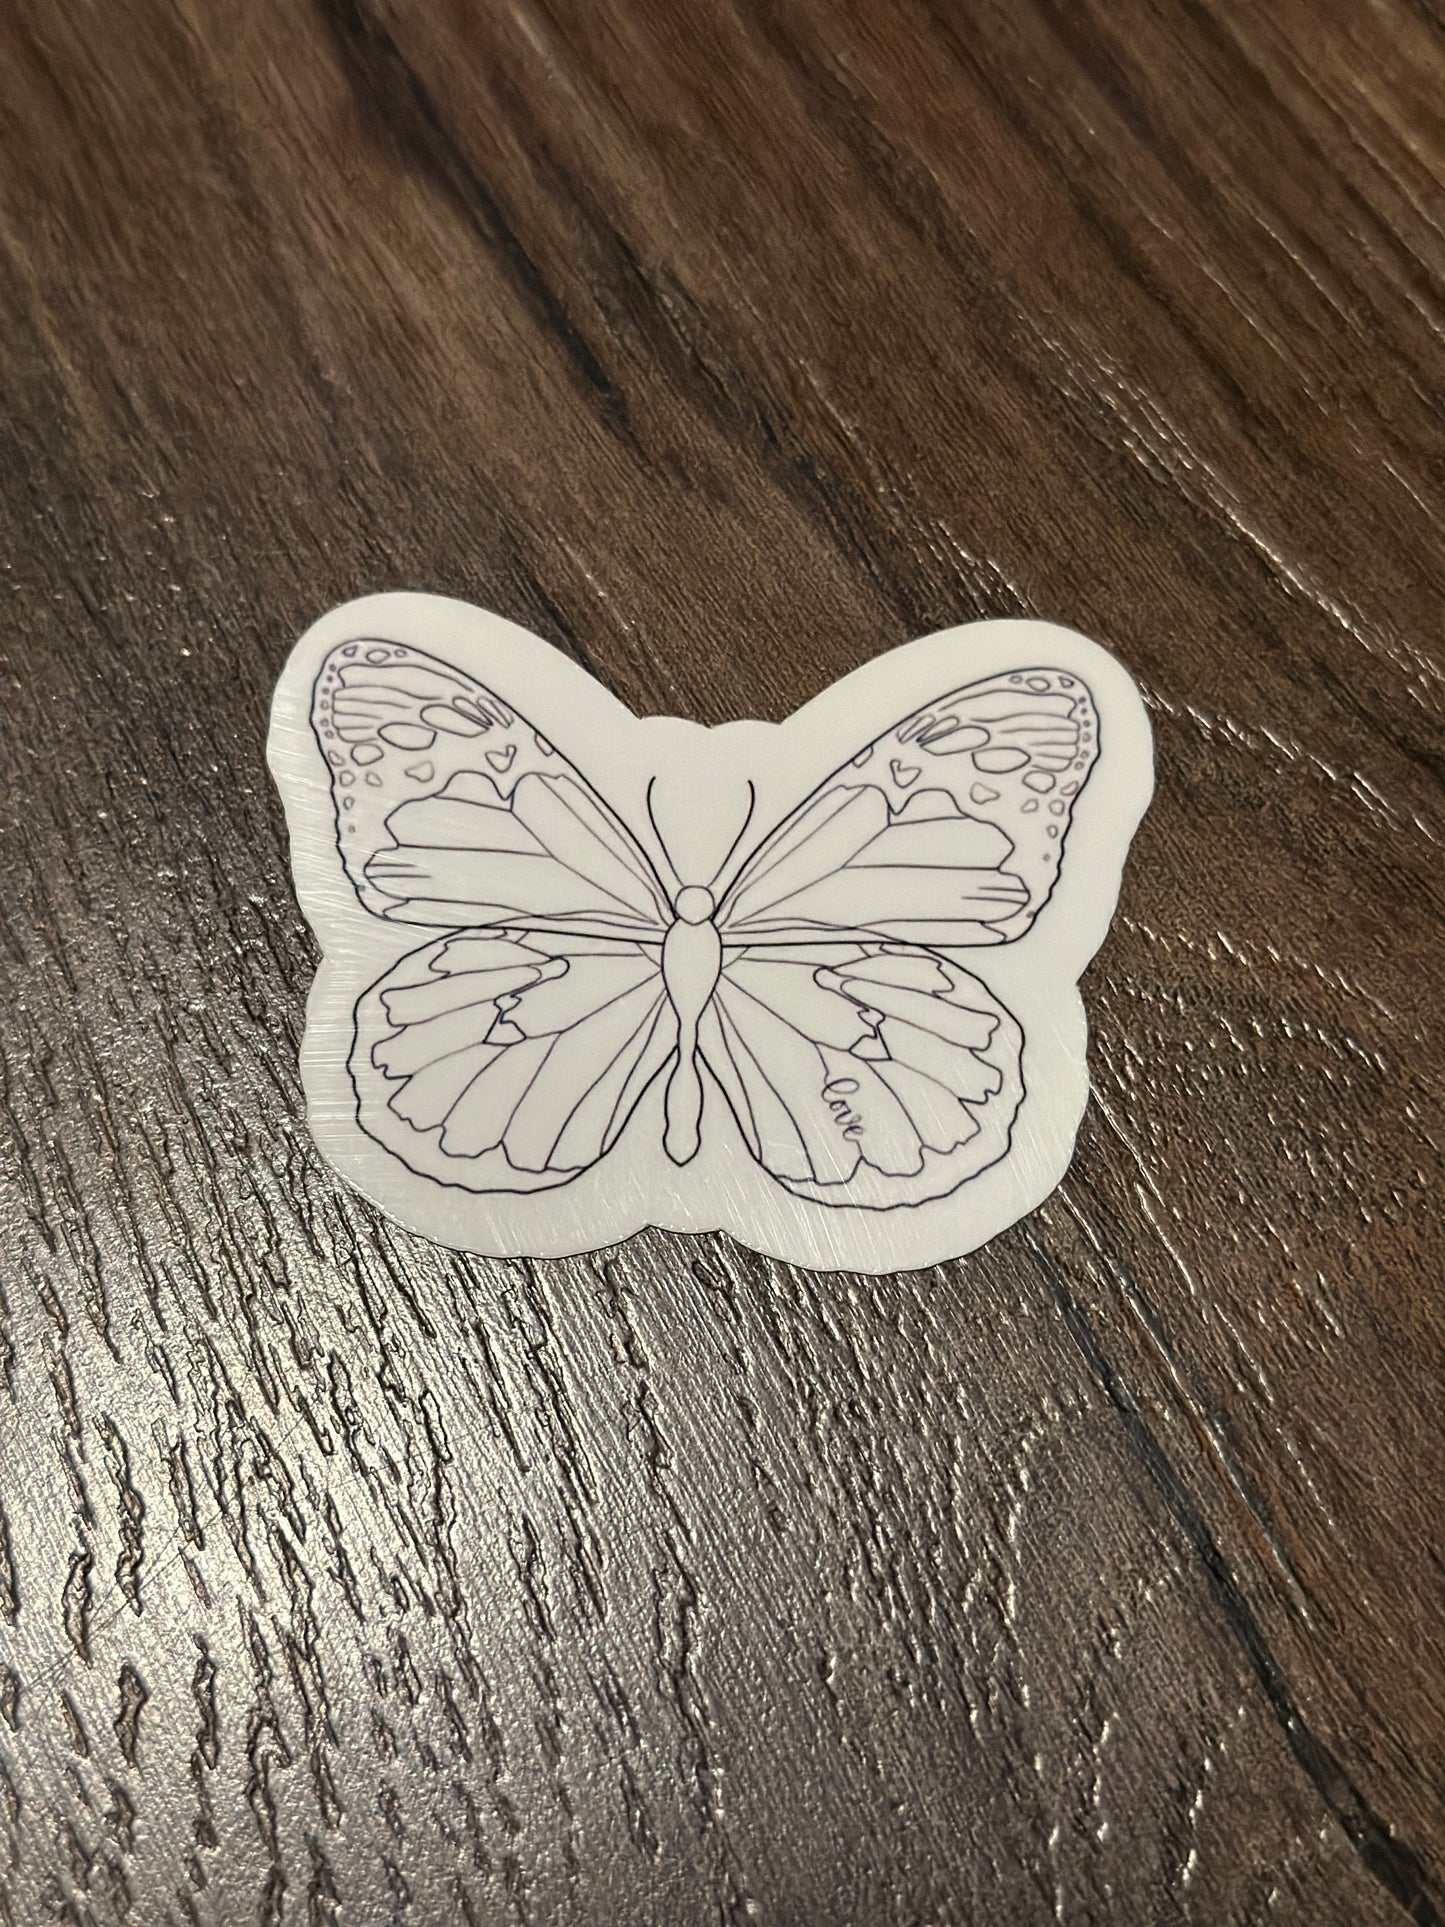 Elliot's Love Butterfly Sticker